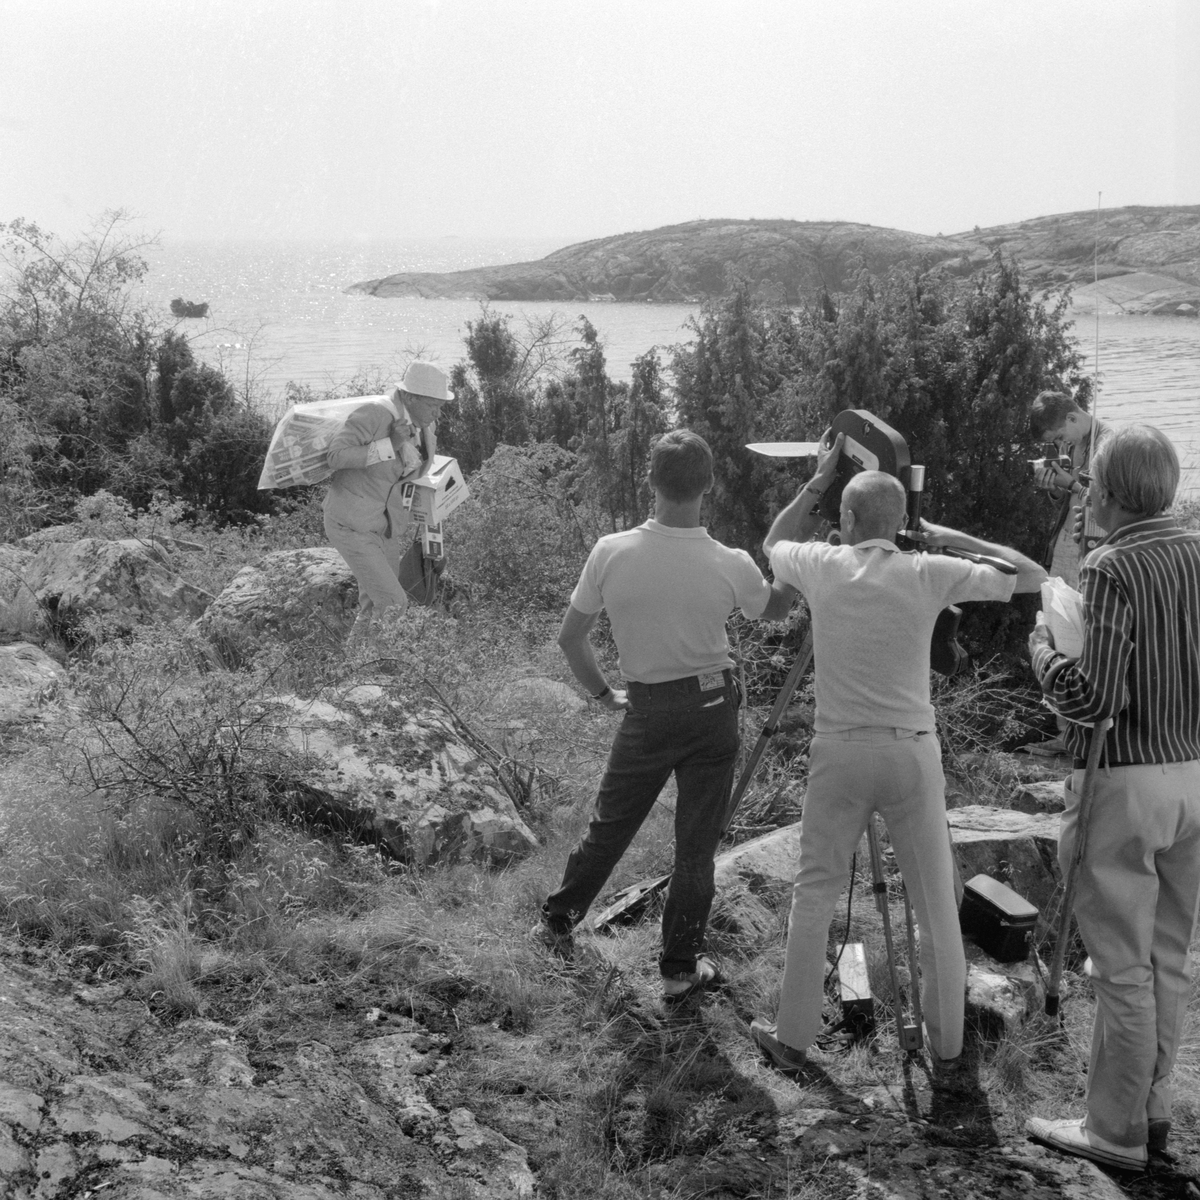 Ögonblick från inspelningen av filmen Skrållan, Ruskprick och Knorrhane i regi av Olle Hellbom. I rollen som smugglaren Knorrhane ser vi Tage Danielsson. Filmen spelades in på Källskär i Gryts skärgård sommaren 1967.